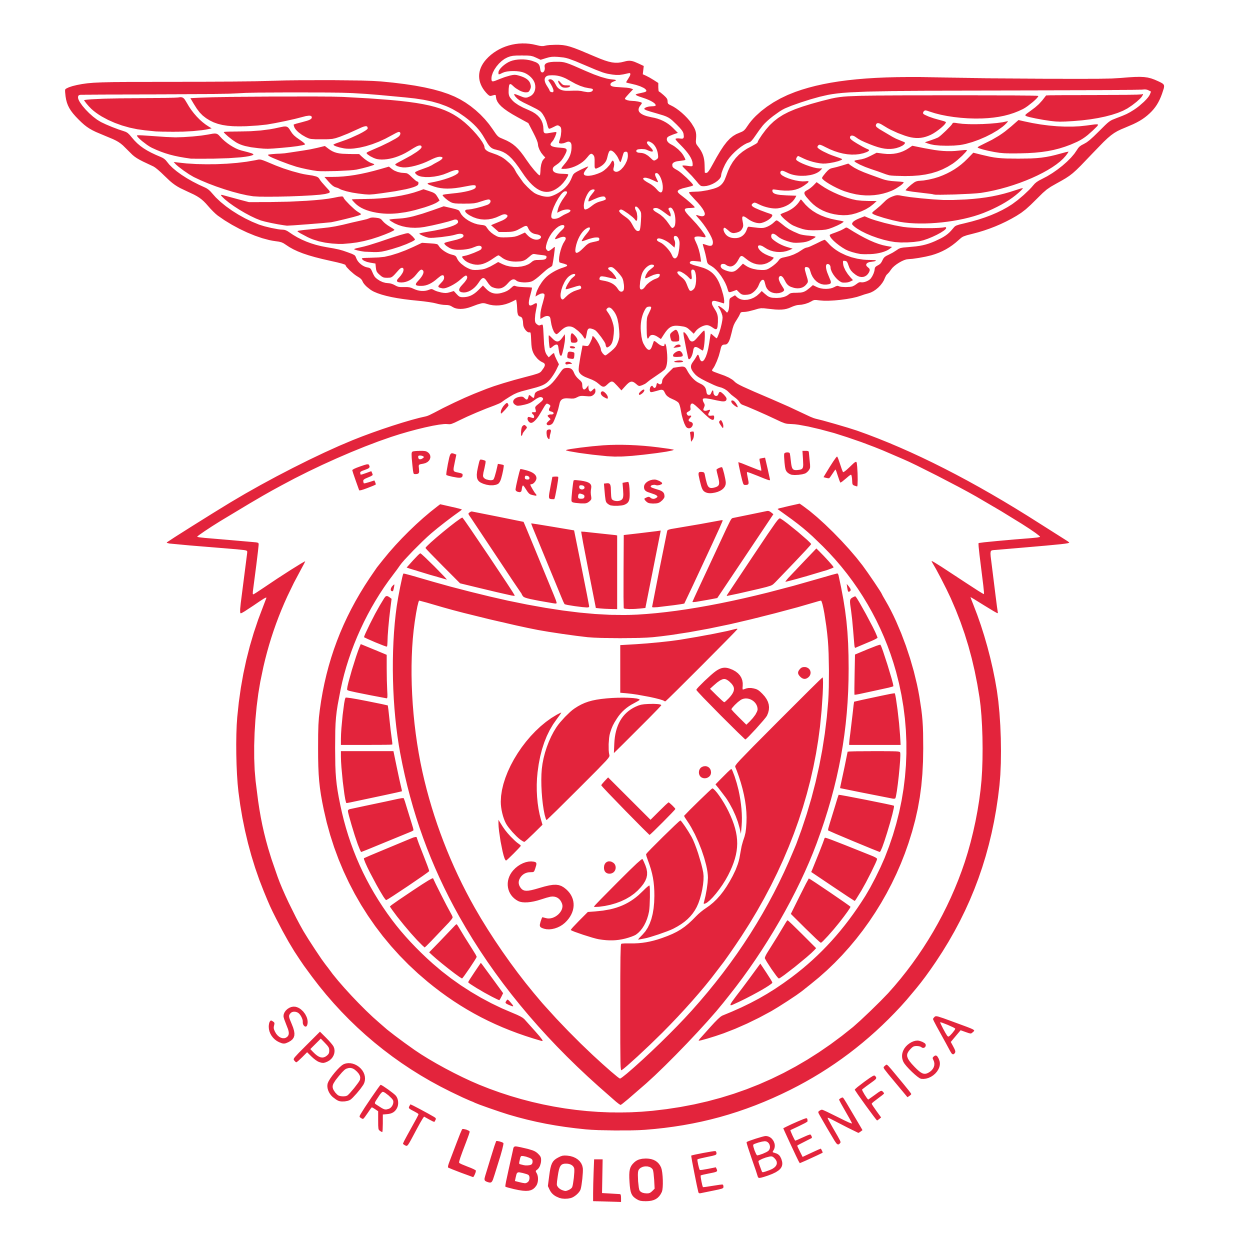 SLB Logo - SLB Libolo e Benfica, o novo clube da nossa terra